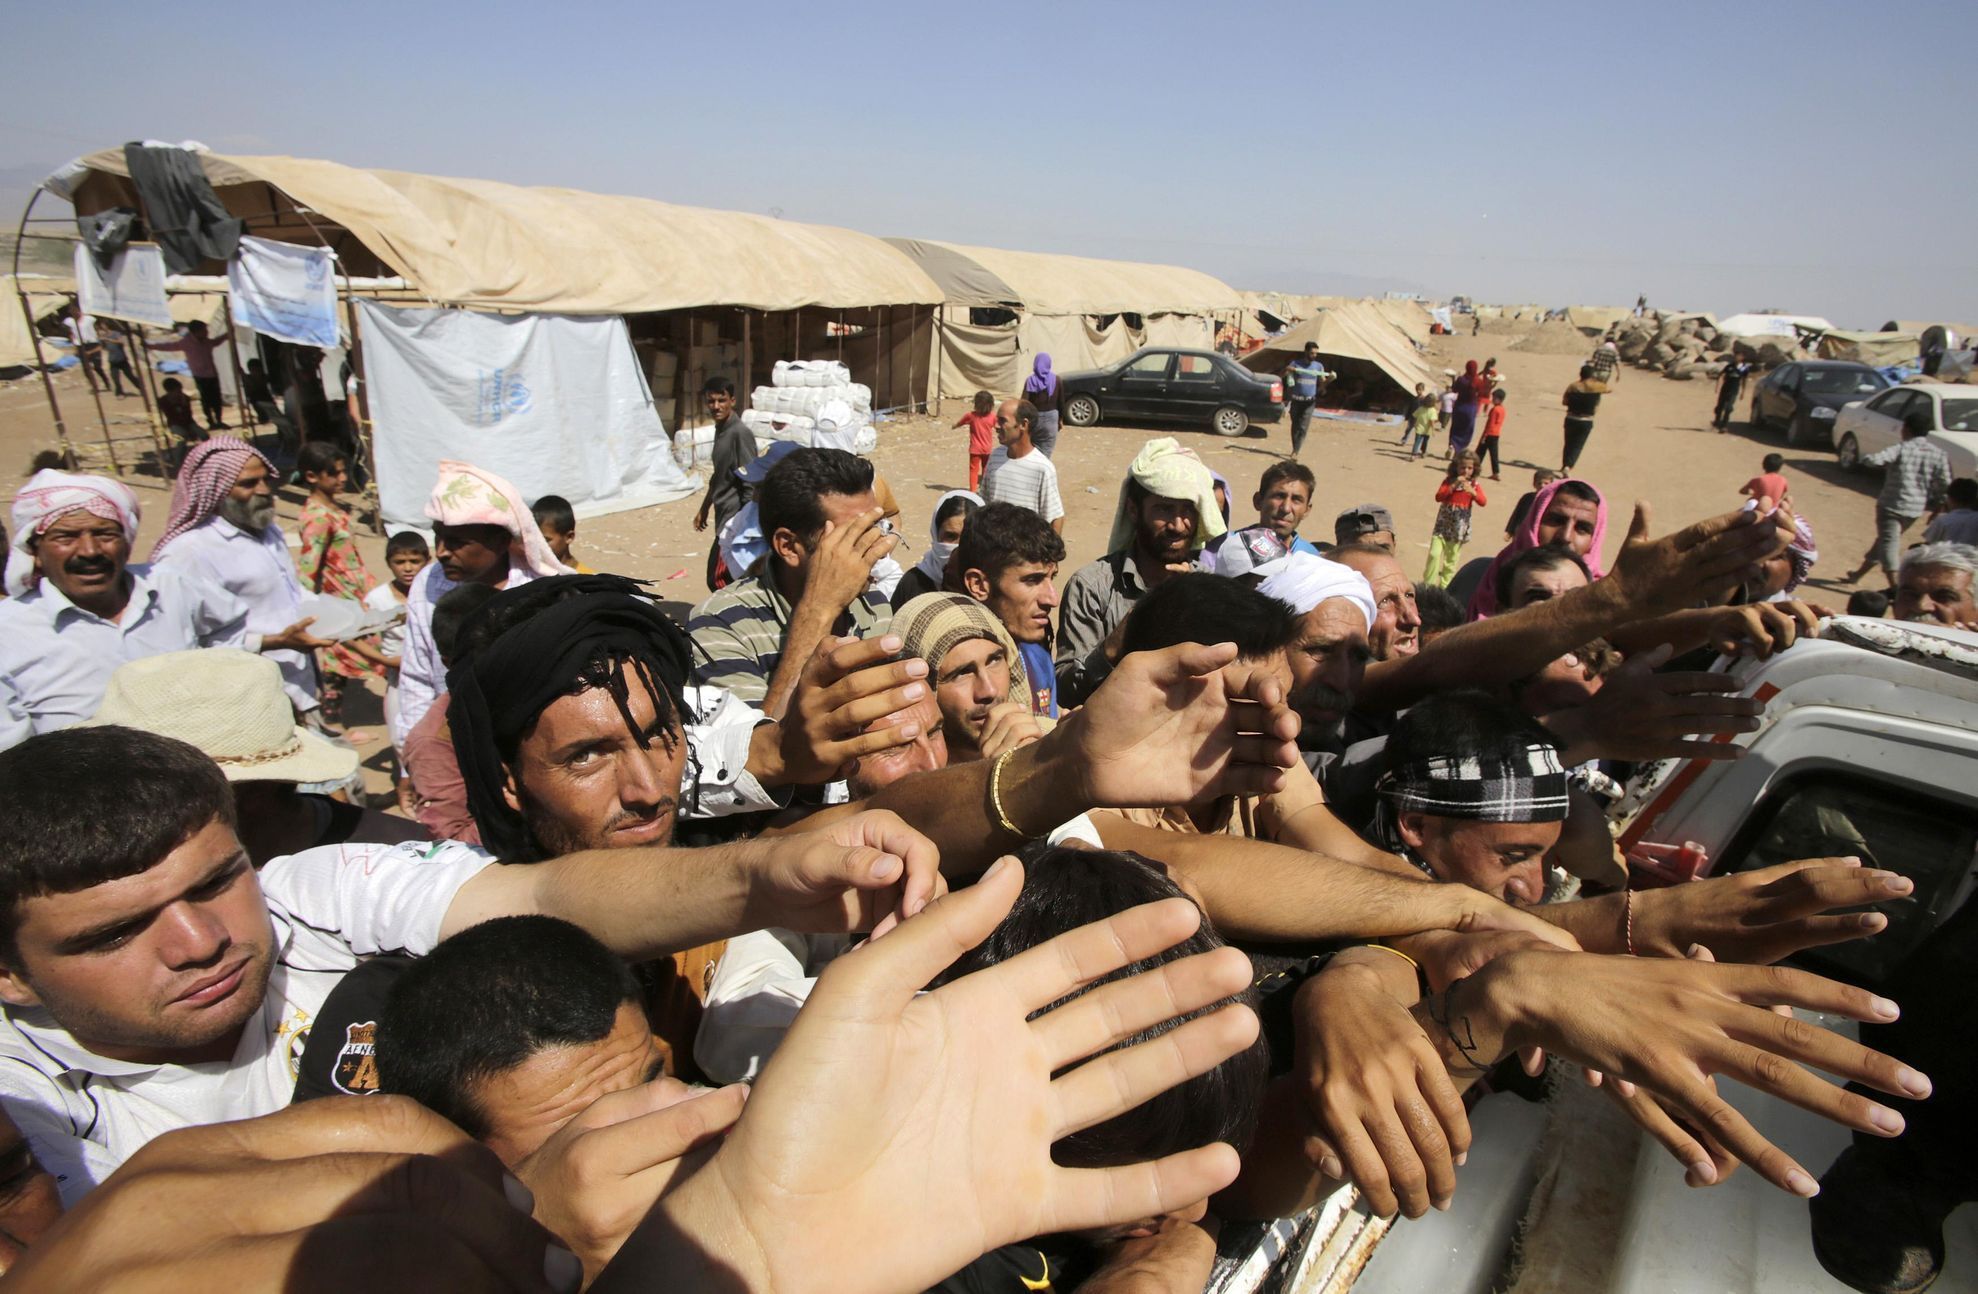 Islamisty pronásledovaní jezídové z Iráku.